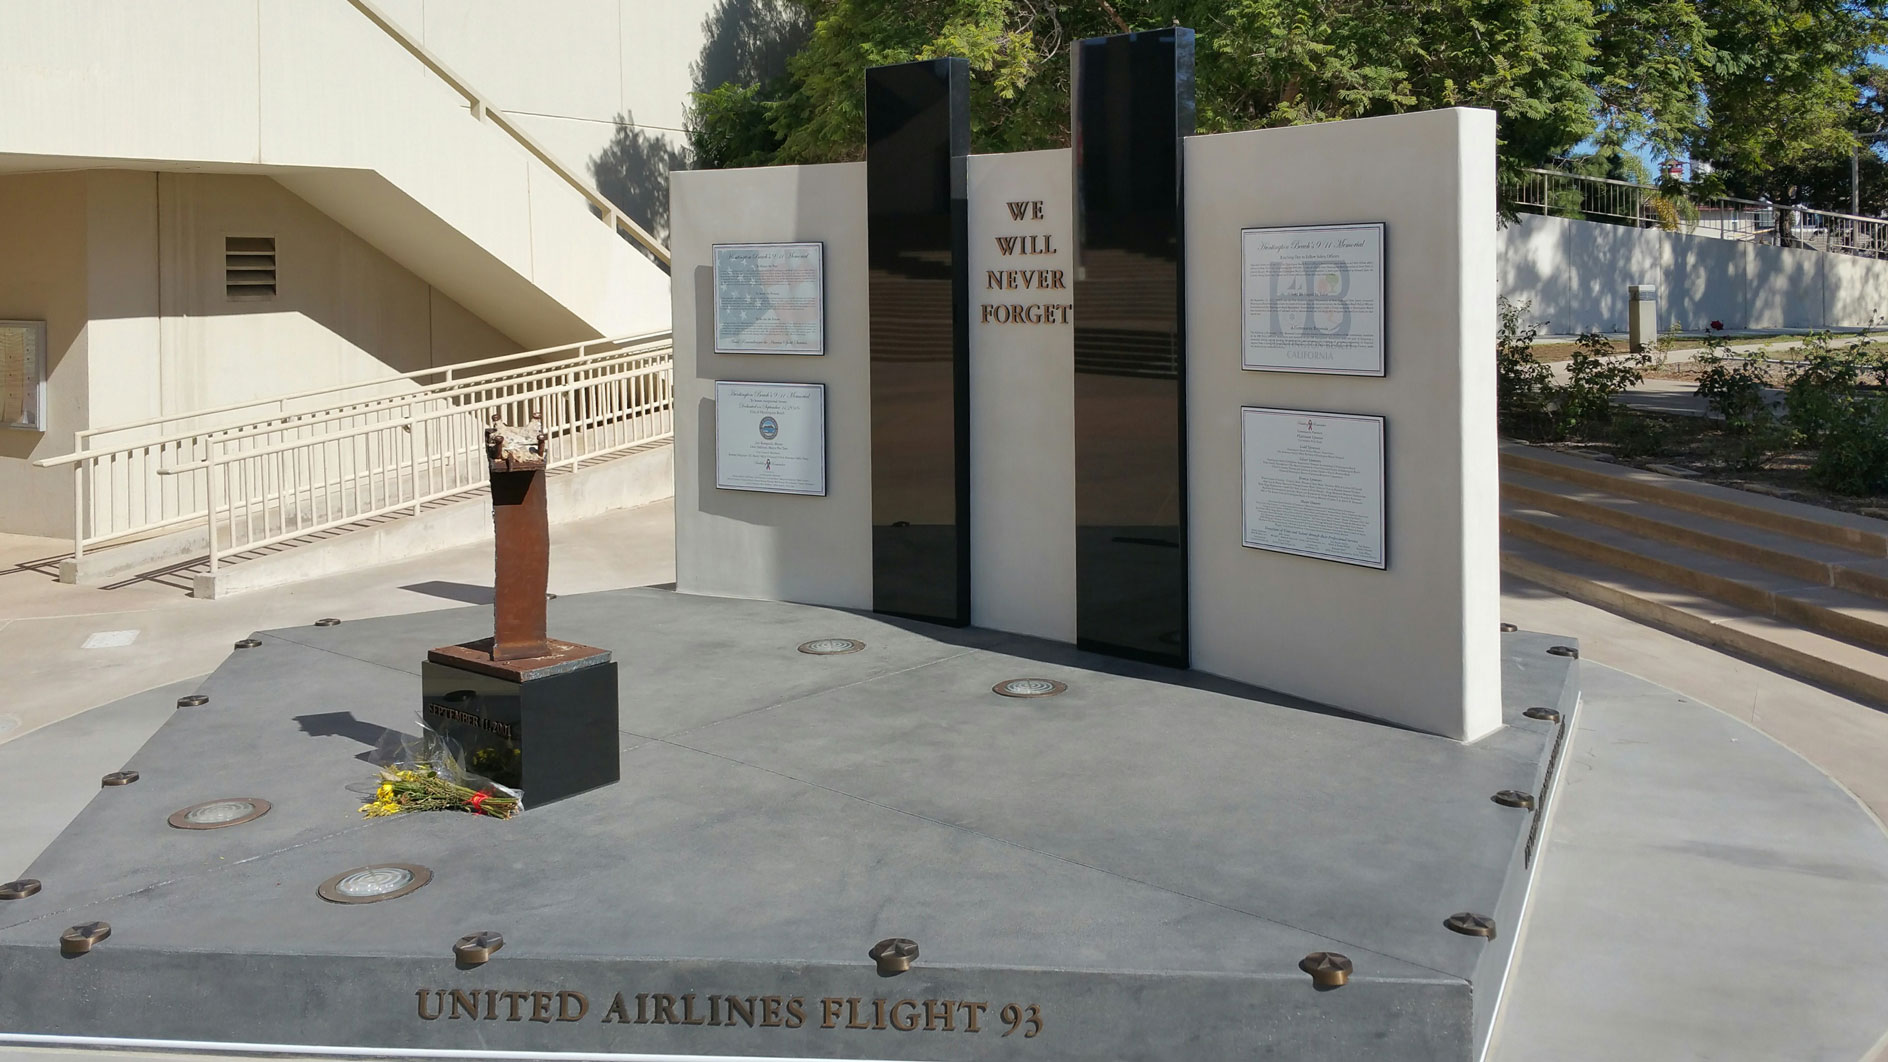 United Airlines 9-11 Memorial